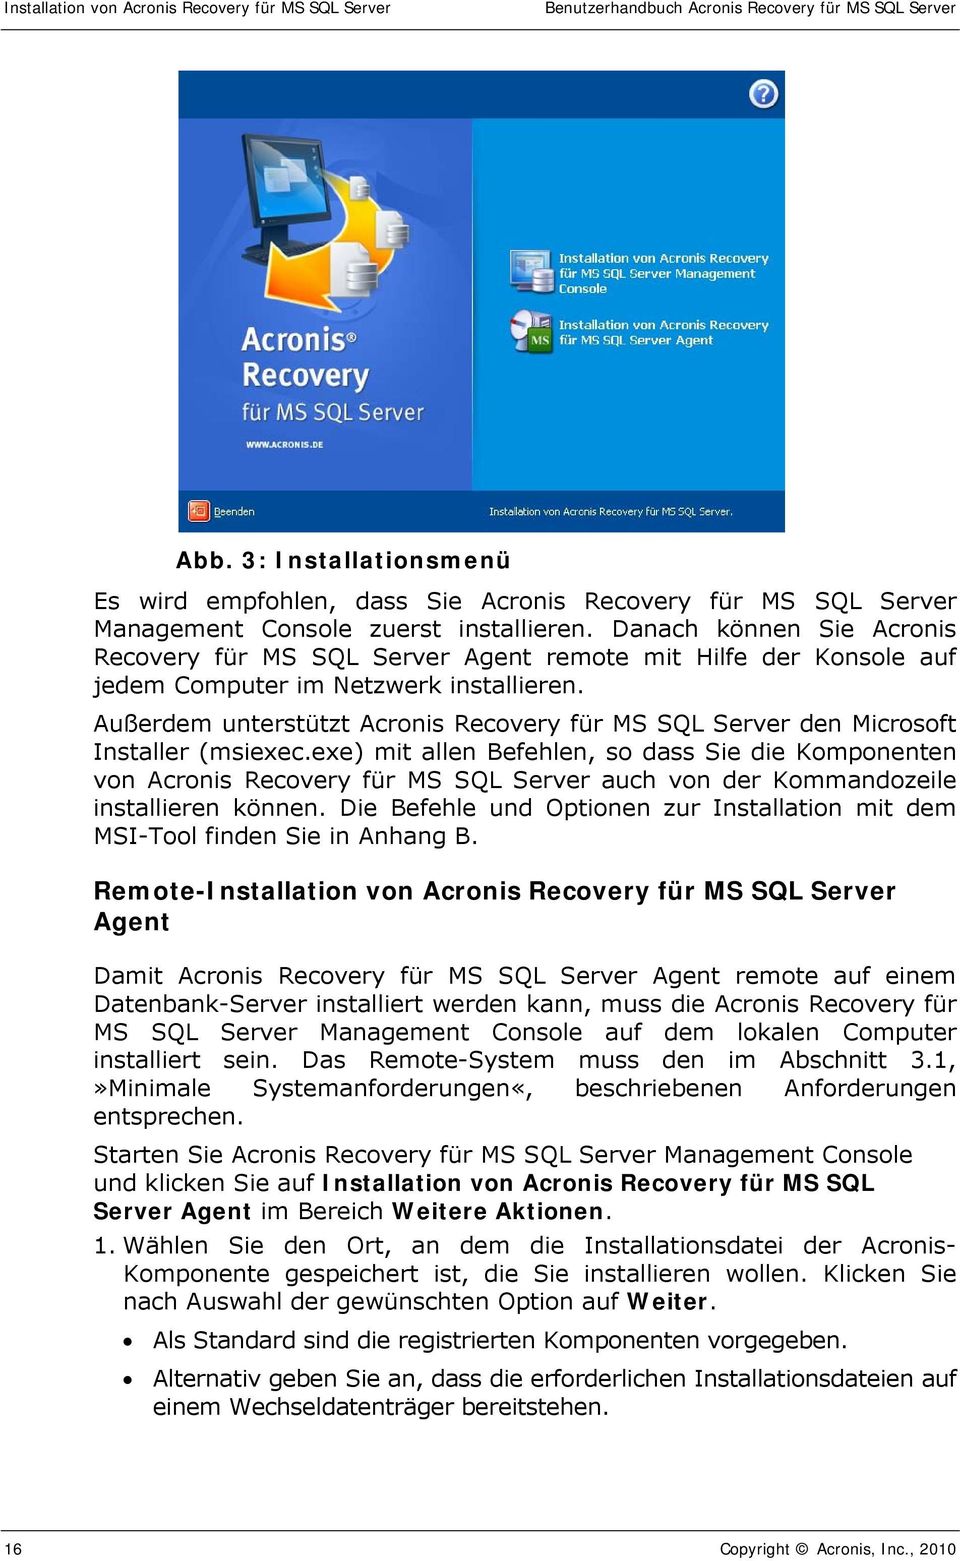 Danach können Sie Acronis Recovery für MS SQL Server Agent remote mit Hilfe der Konsole auf jedem Computer im Netzwerk installieren.